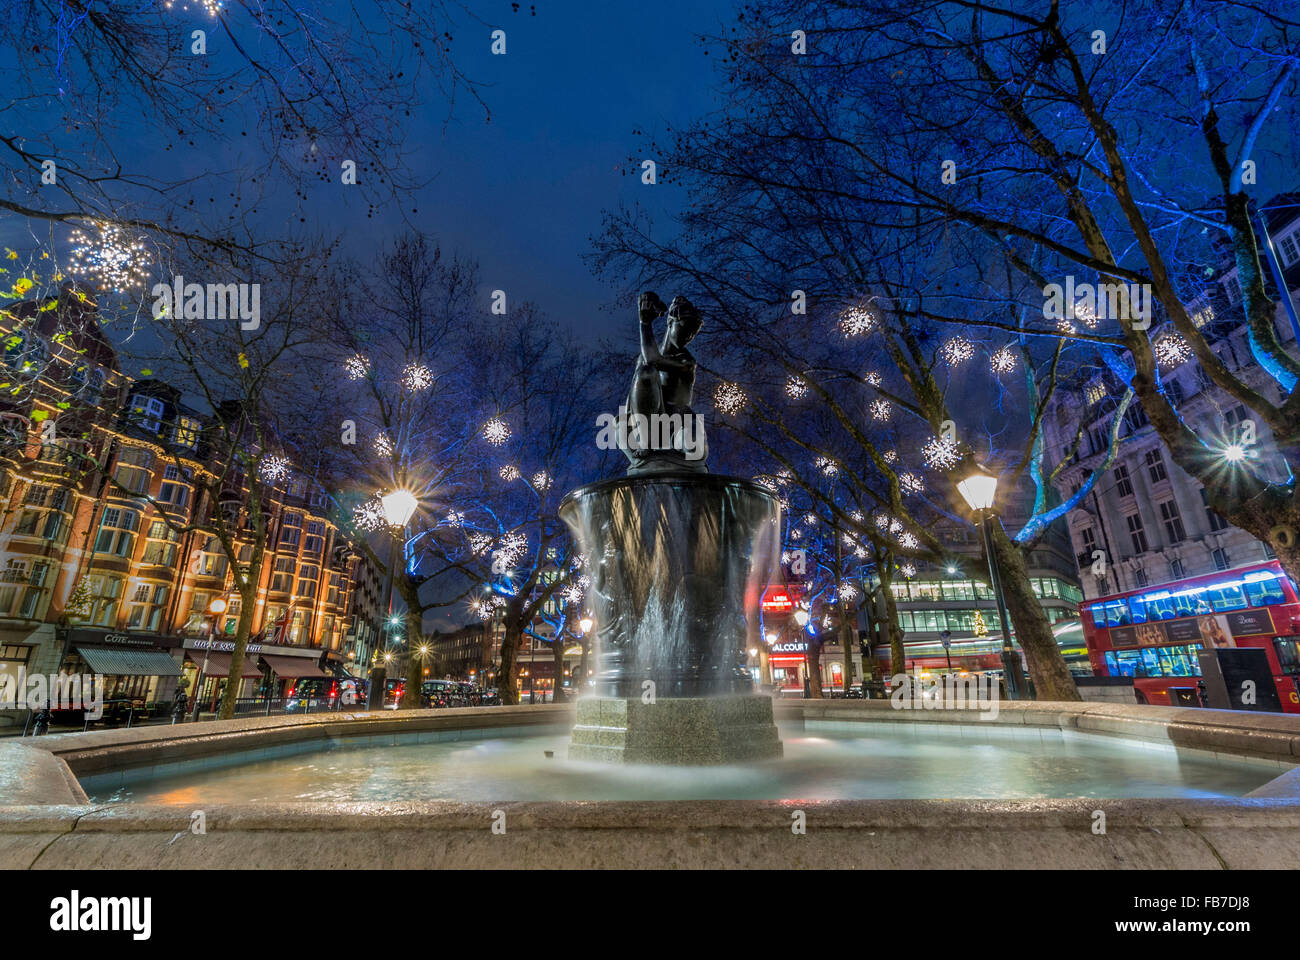 Der Venusbrunnen am Sloane Square, London, Großbritannien, zu Weihnachten mit Beleuchtung Stockfoto